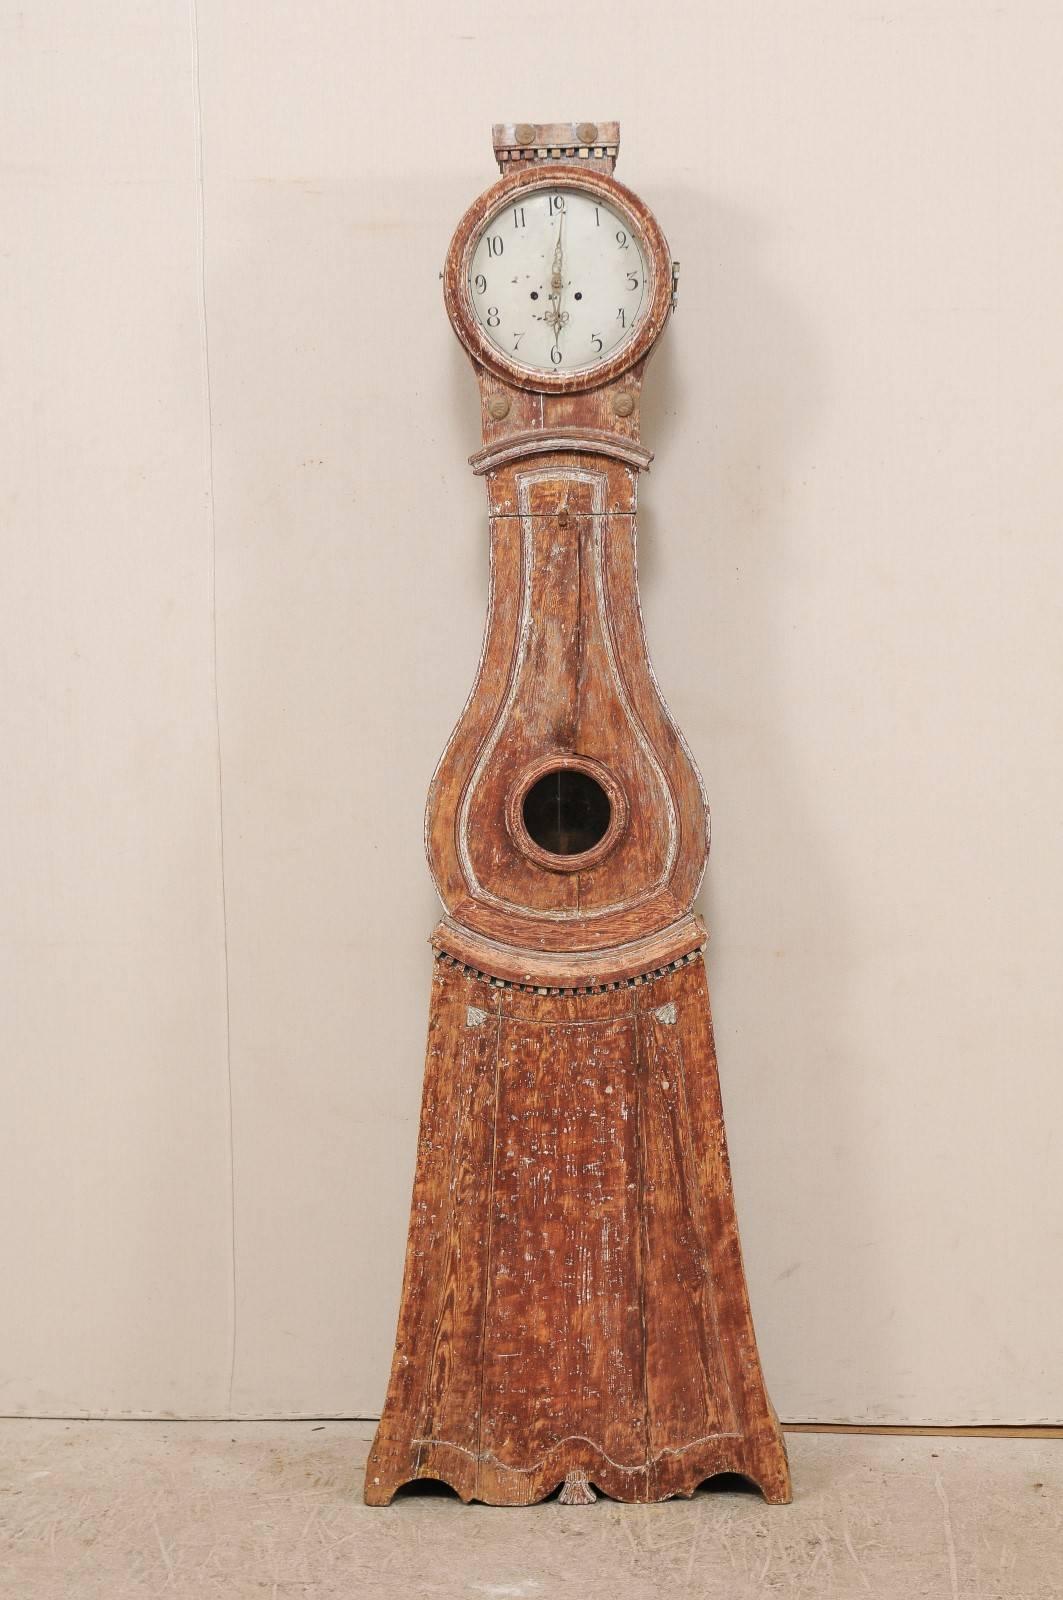 Une horloge suédoise en bois peint du 19ème siècle. Cette horloge suédoise des années 1820 présente une crête plate surélevée, son cadran et ses mouvements métalliques ronds d'origine, un ventre en forme de goutte d'eau et un fond triangulaire. La